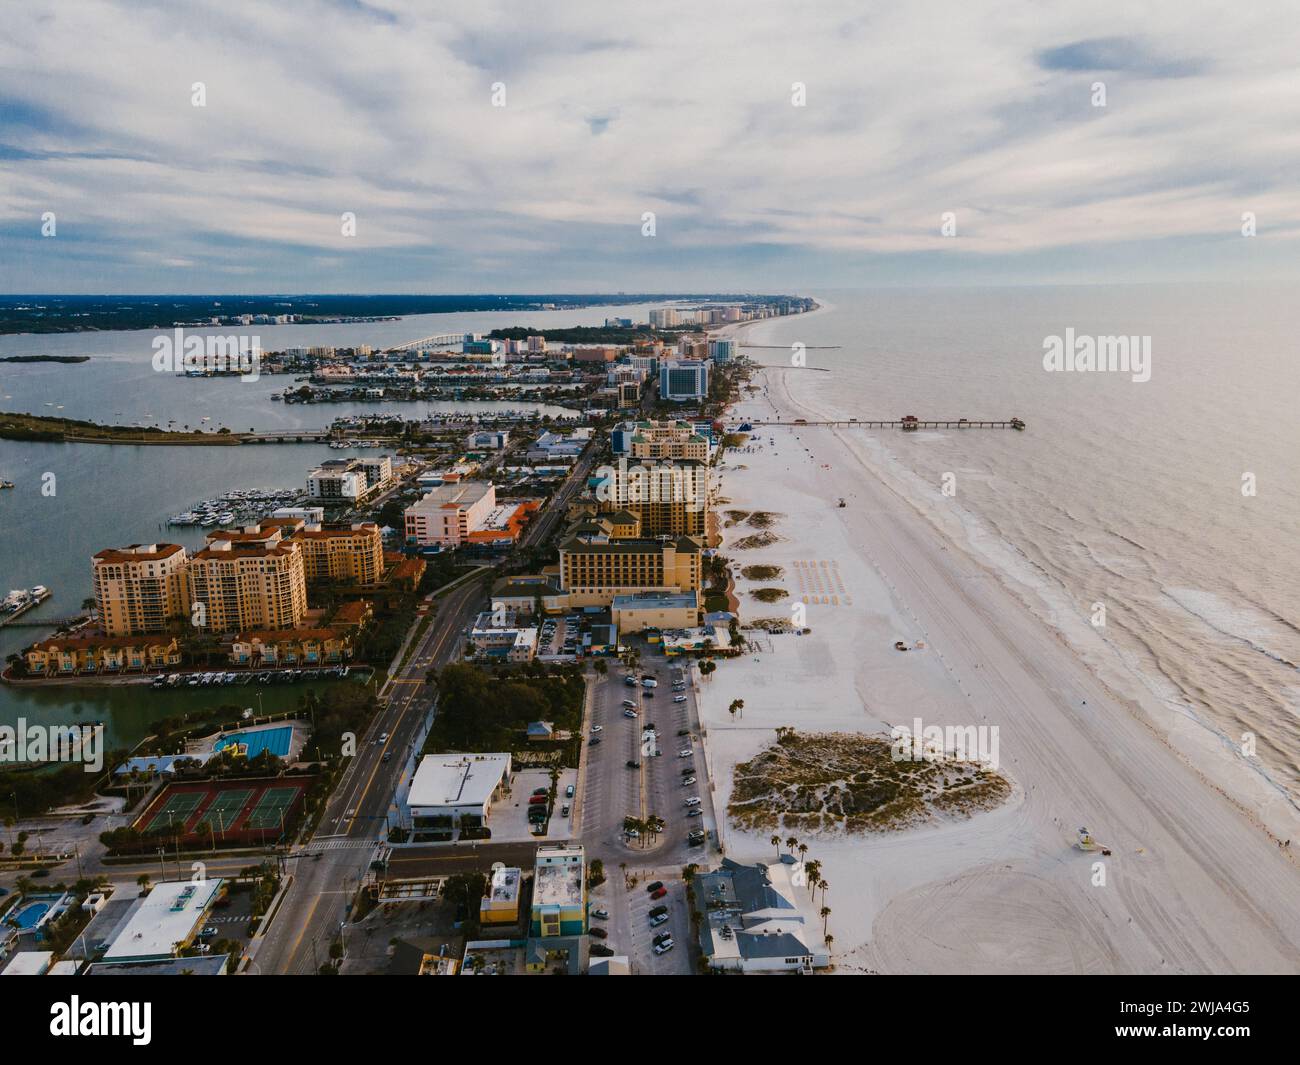 Eine Drohne fängt die weitläufige Küste von Miami mit Gebäuden, Sandstränden und bewölktem Himmel ein und veranschaulicht einen Moment der städtischen und natürlichen Mischung in Florida Stockfoto